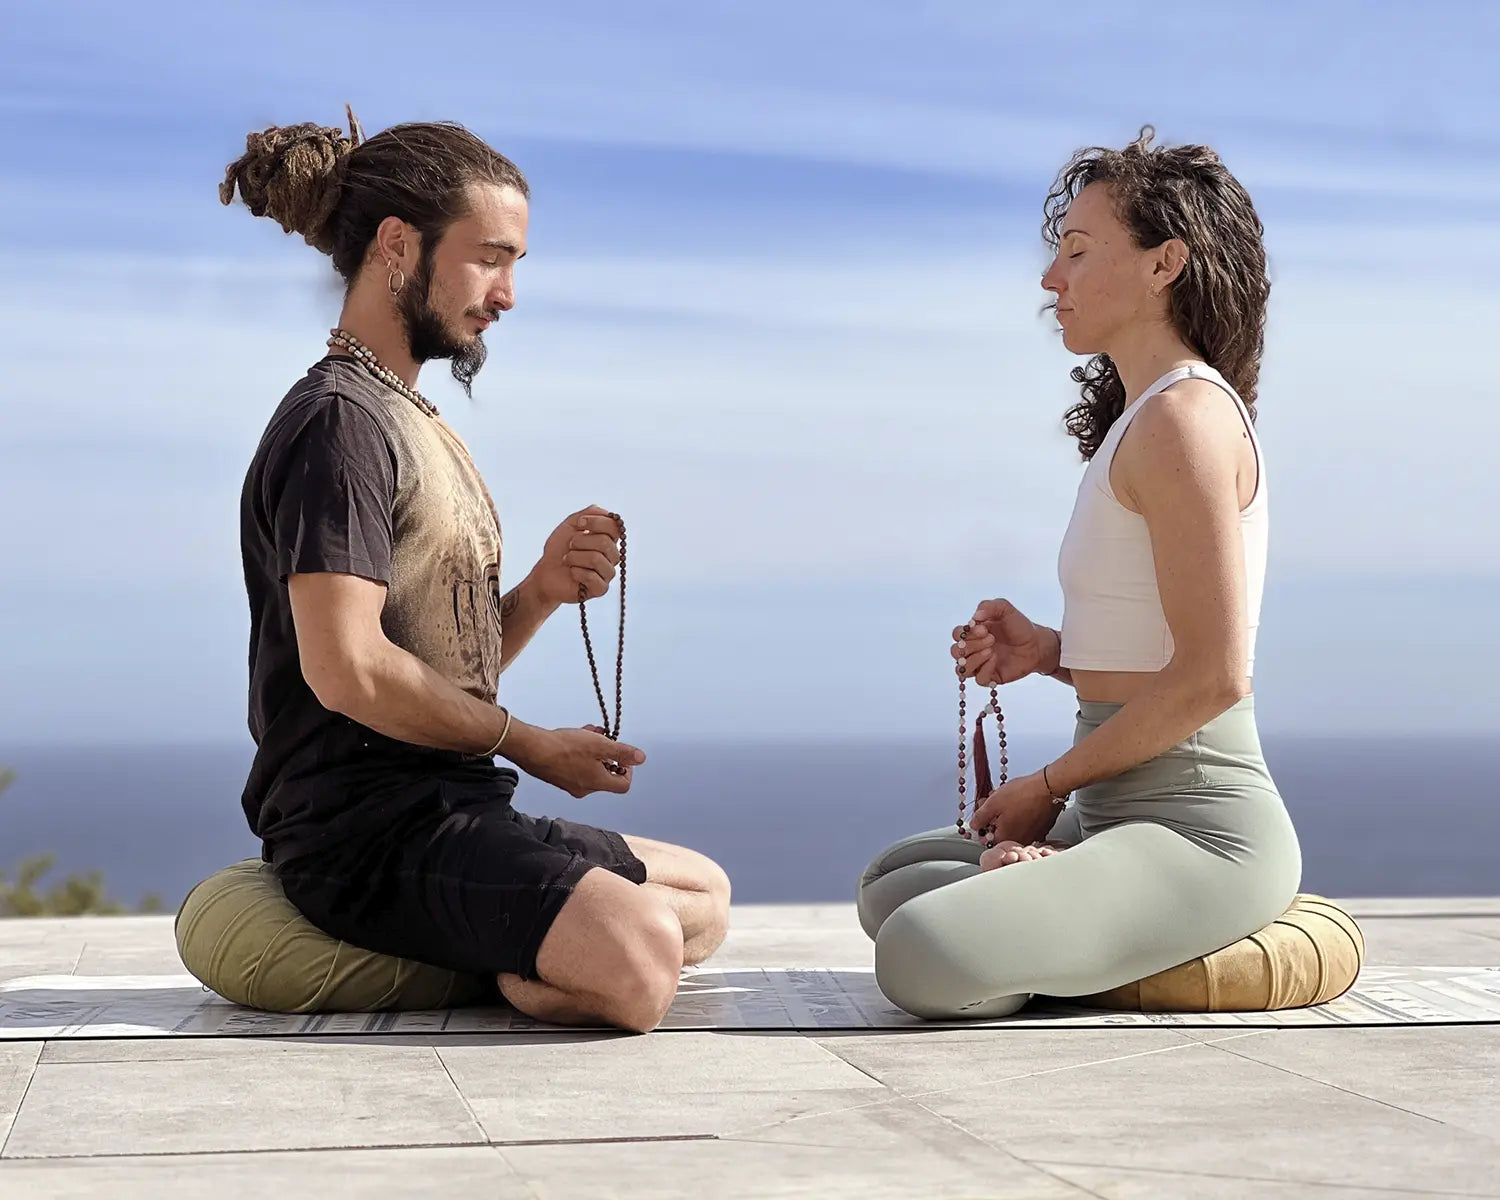 Cojín para Meditación Yoga Zafu